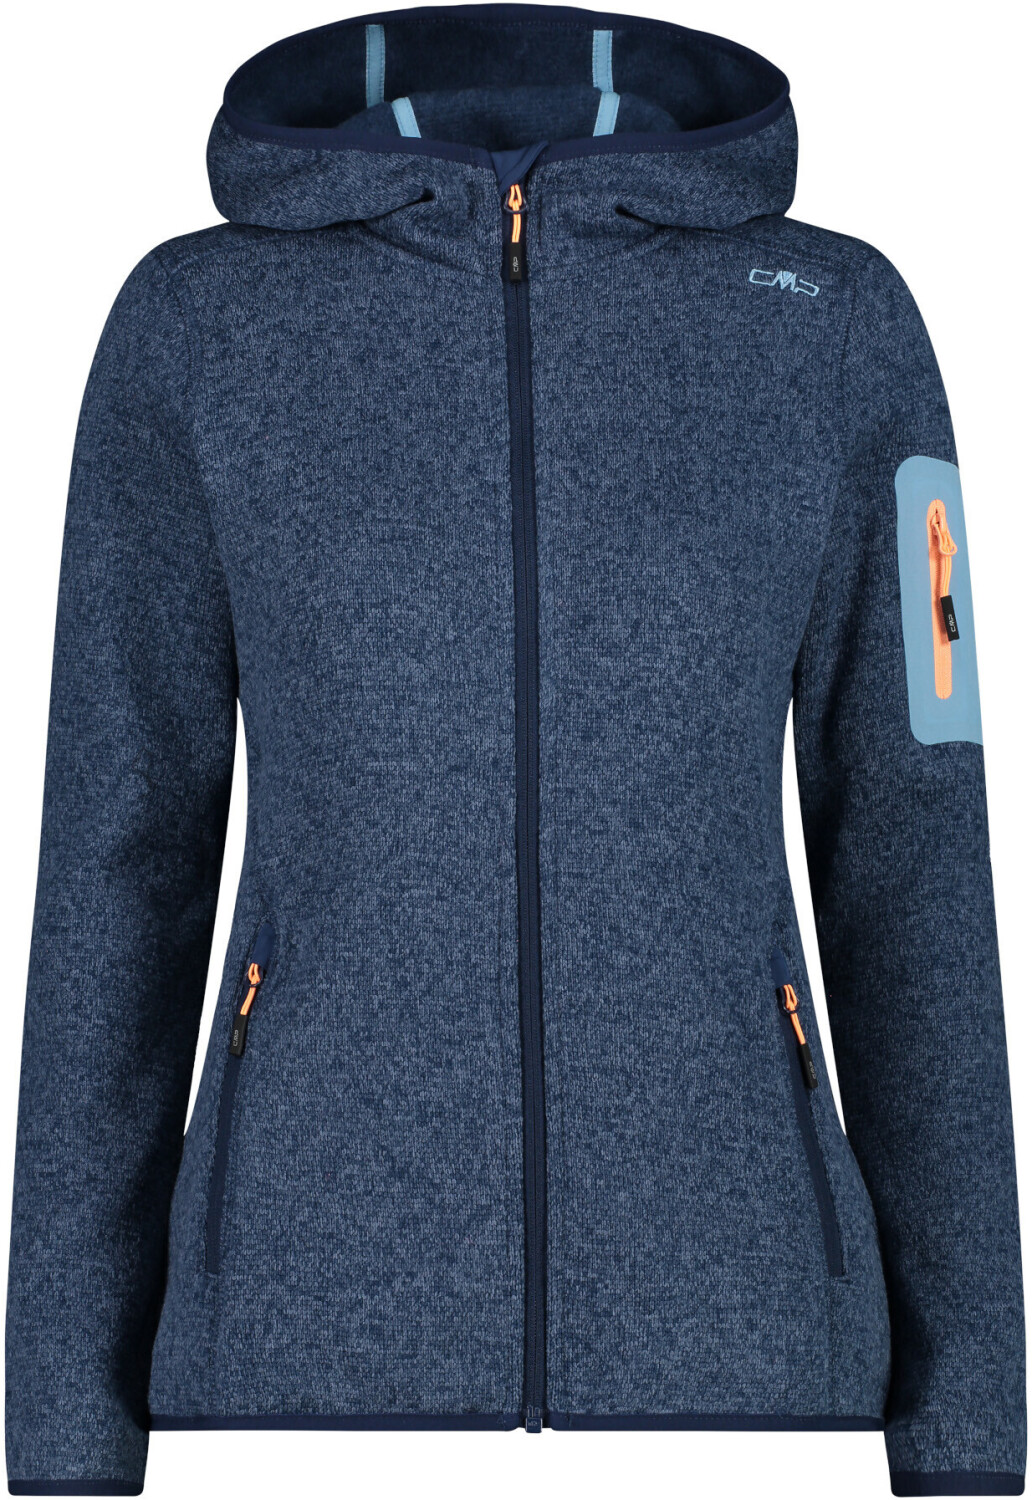 CMP Woman Fleece Jacket Fix Hood (3H19826) blue-cielo ab 41,95 € |  Preisvergleich bei